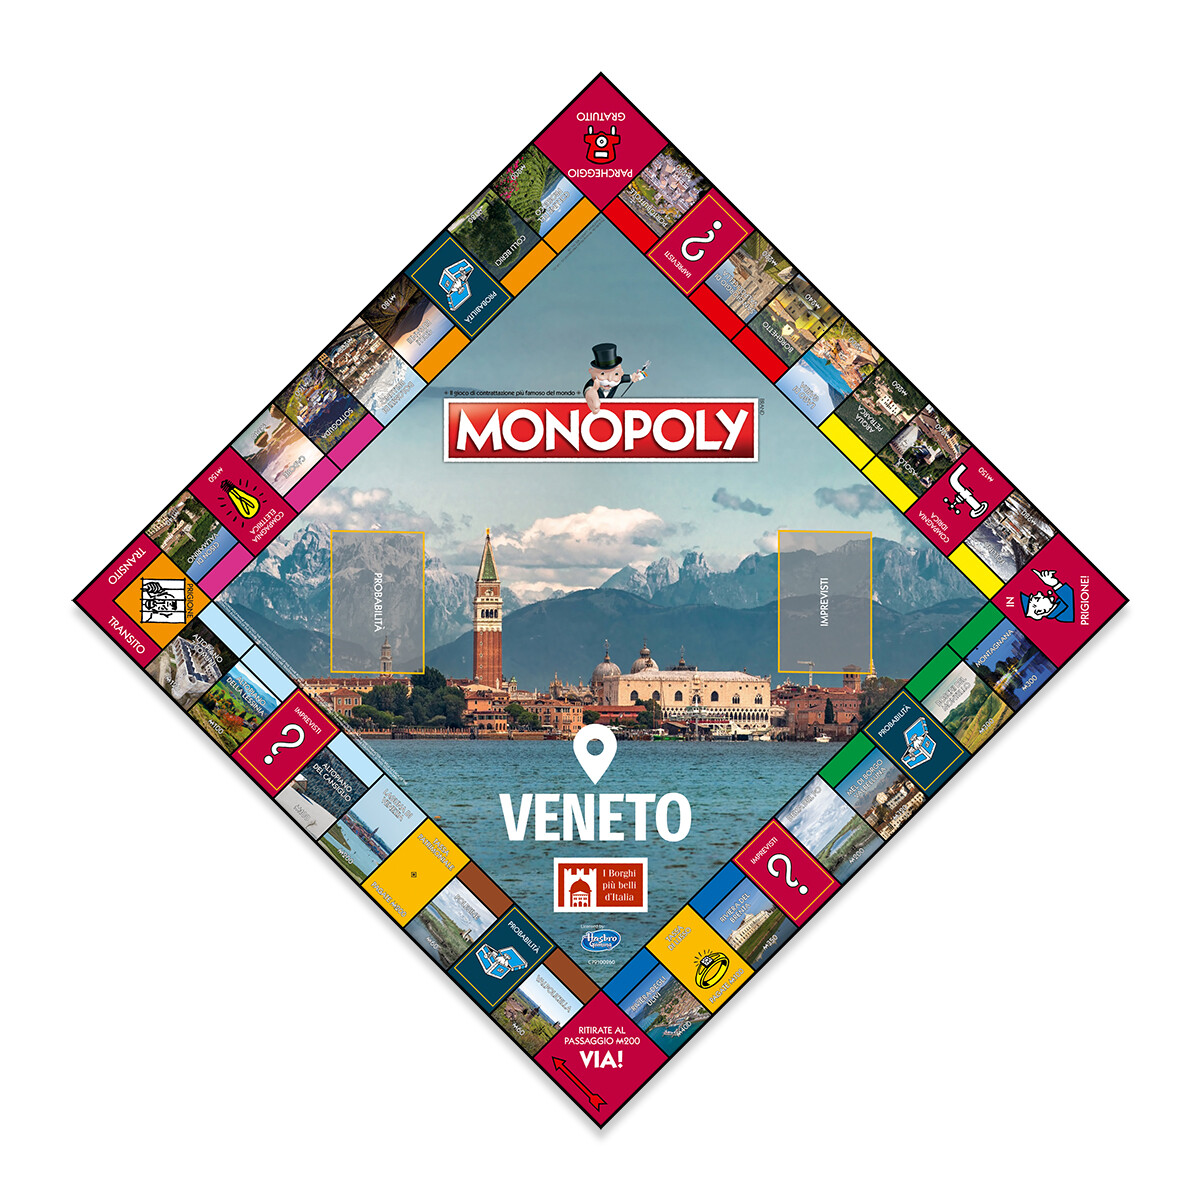 Monopoly - i borghi più belli d'italia - edizione veneto - MONOPOLY